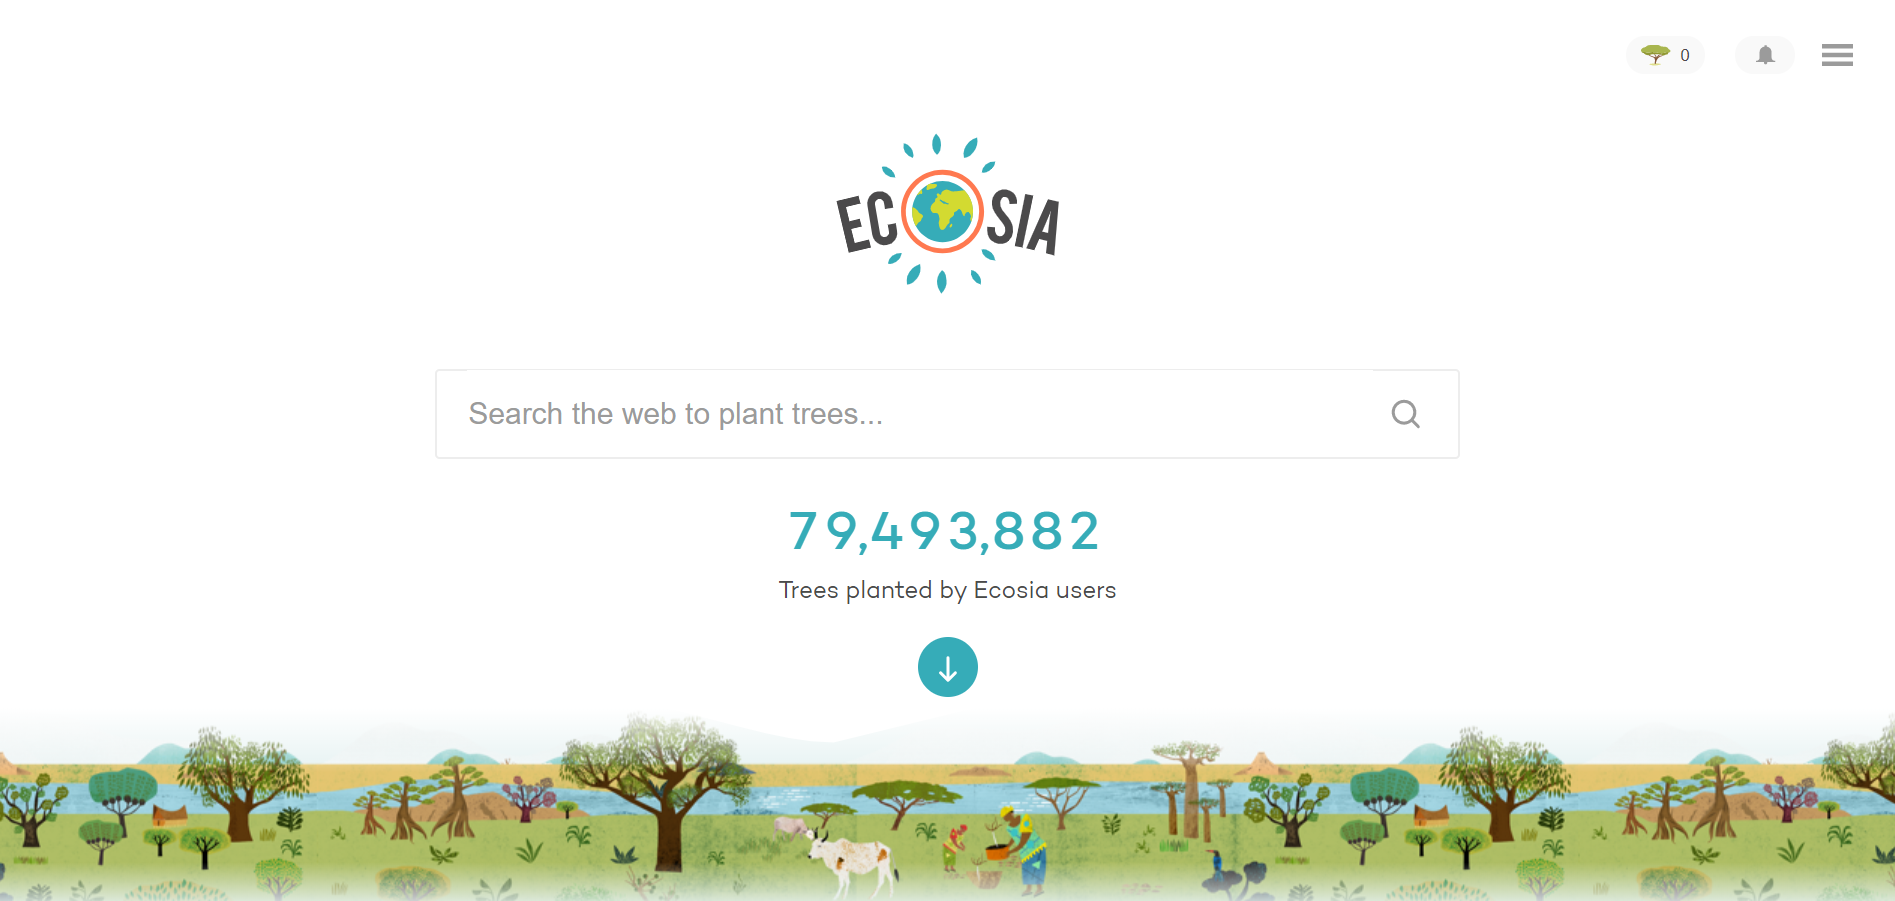 pagina inicial do site de buscas ecosia